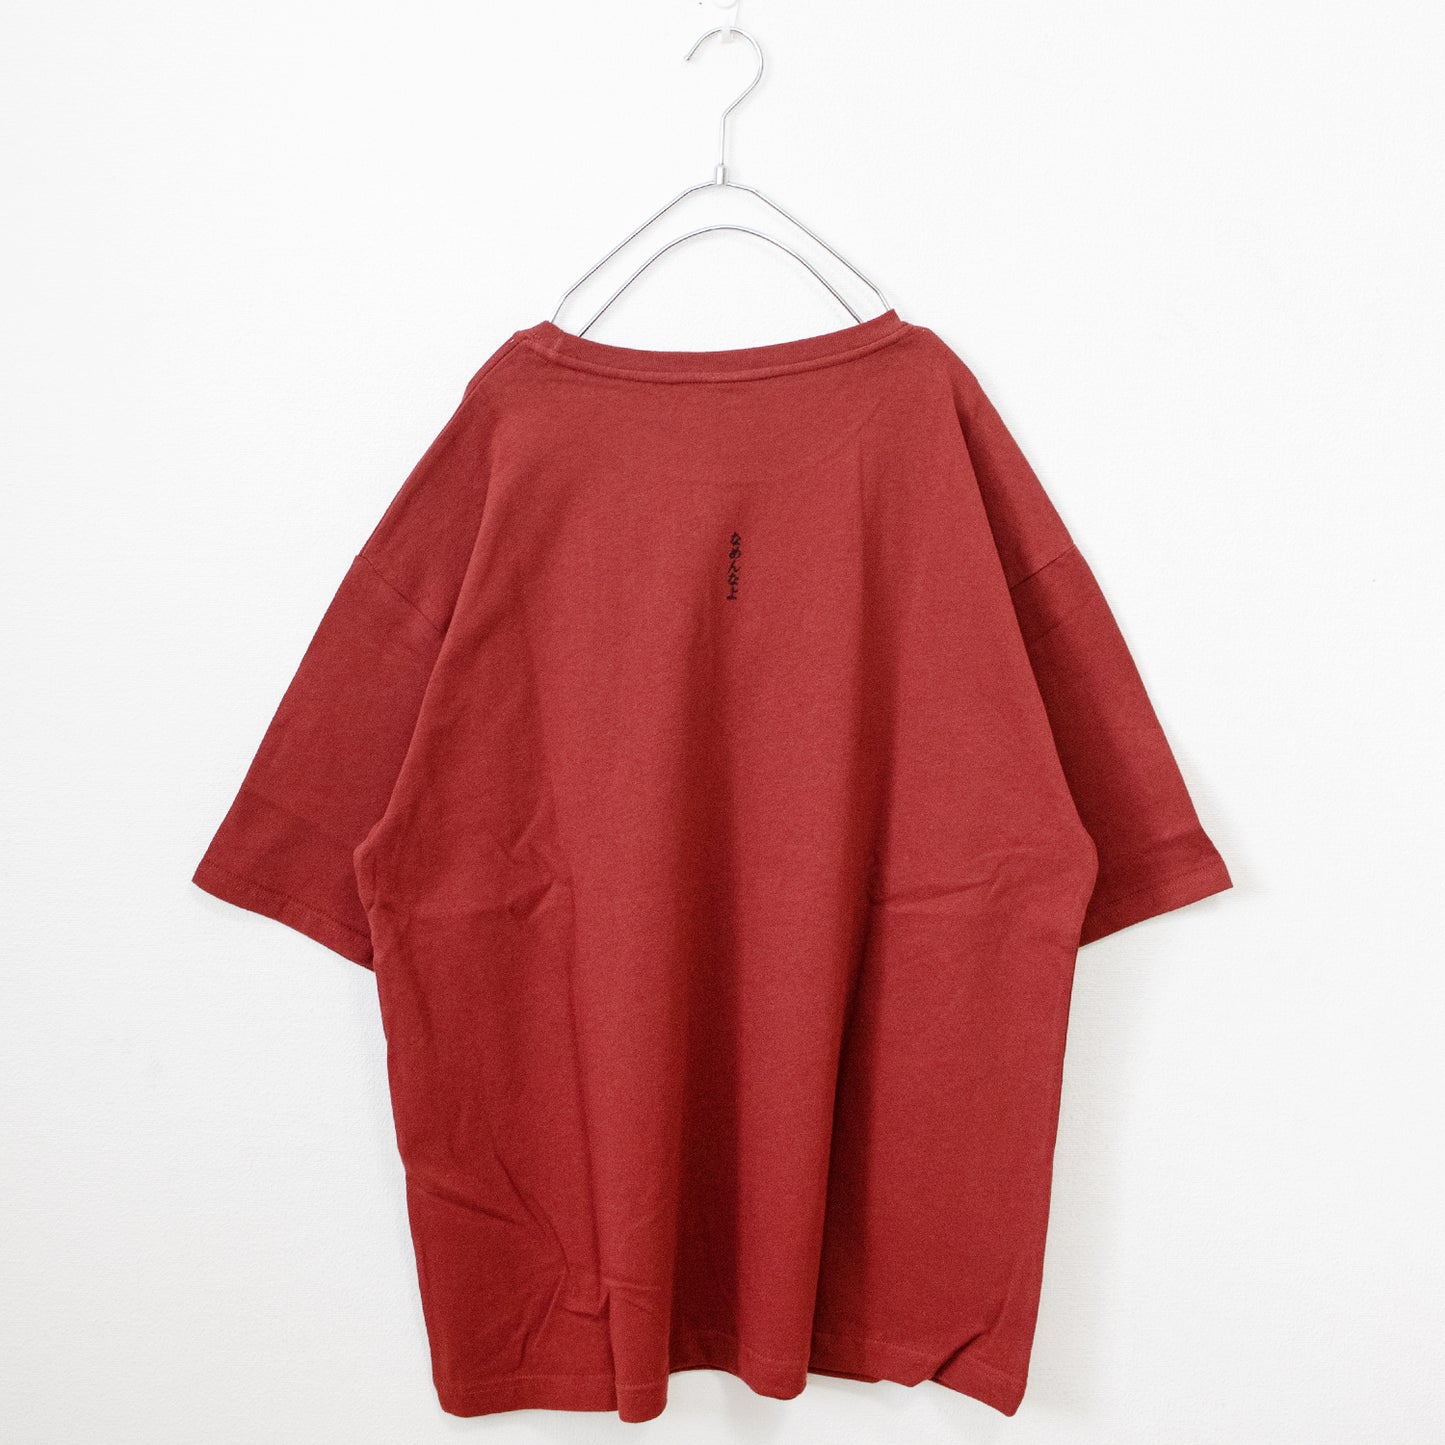 Nameneko Oversized Silhouette Photo Short Sleeve T-Shirt Wine Red